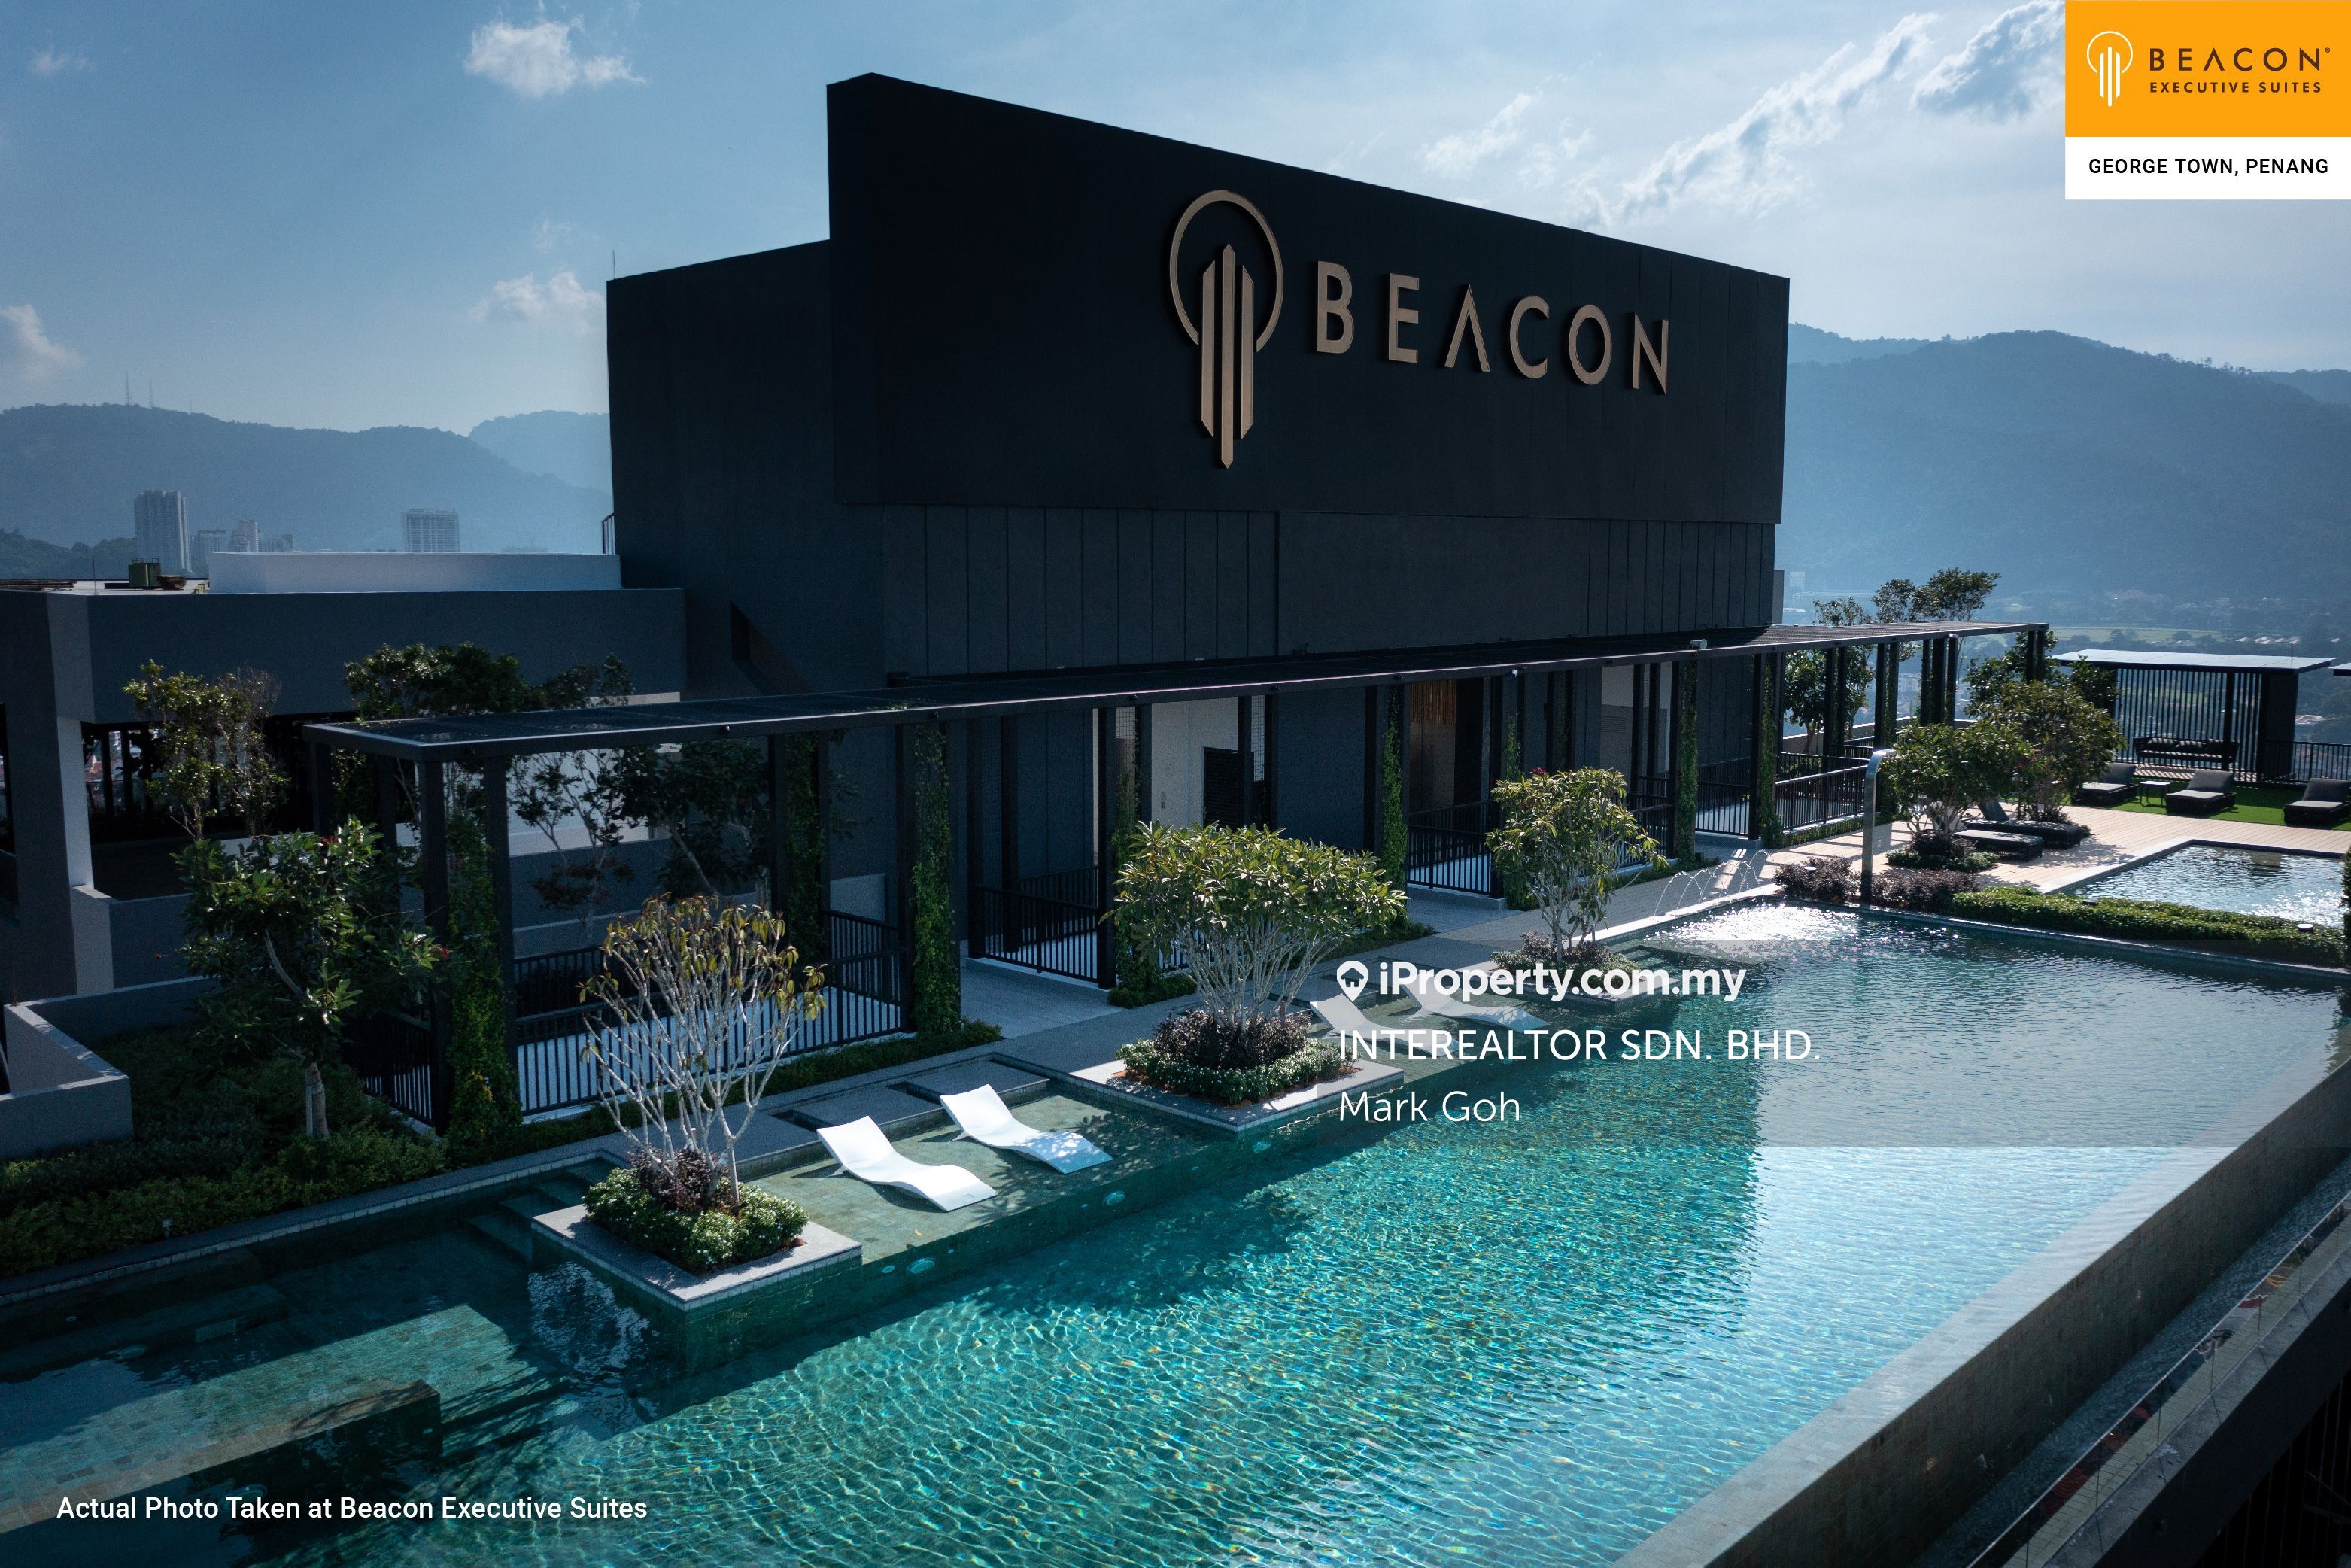 Beacon executive suites